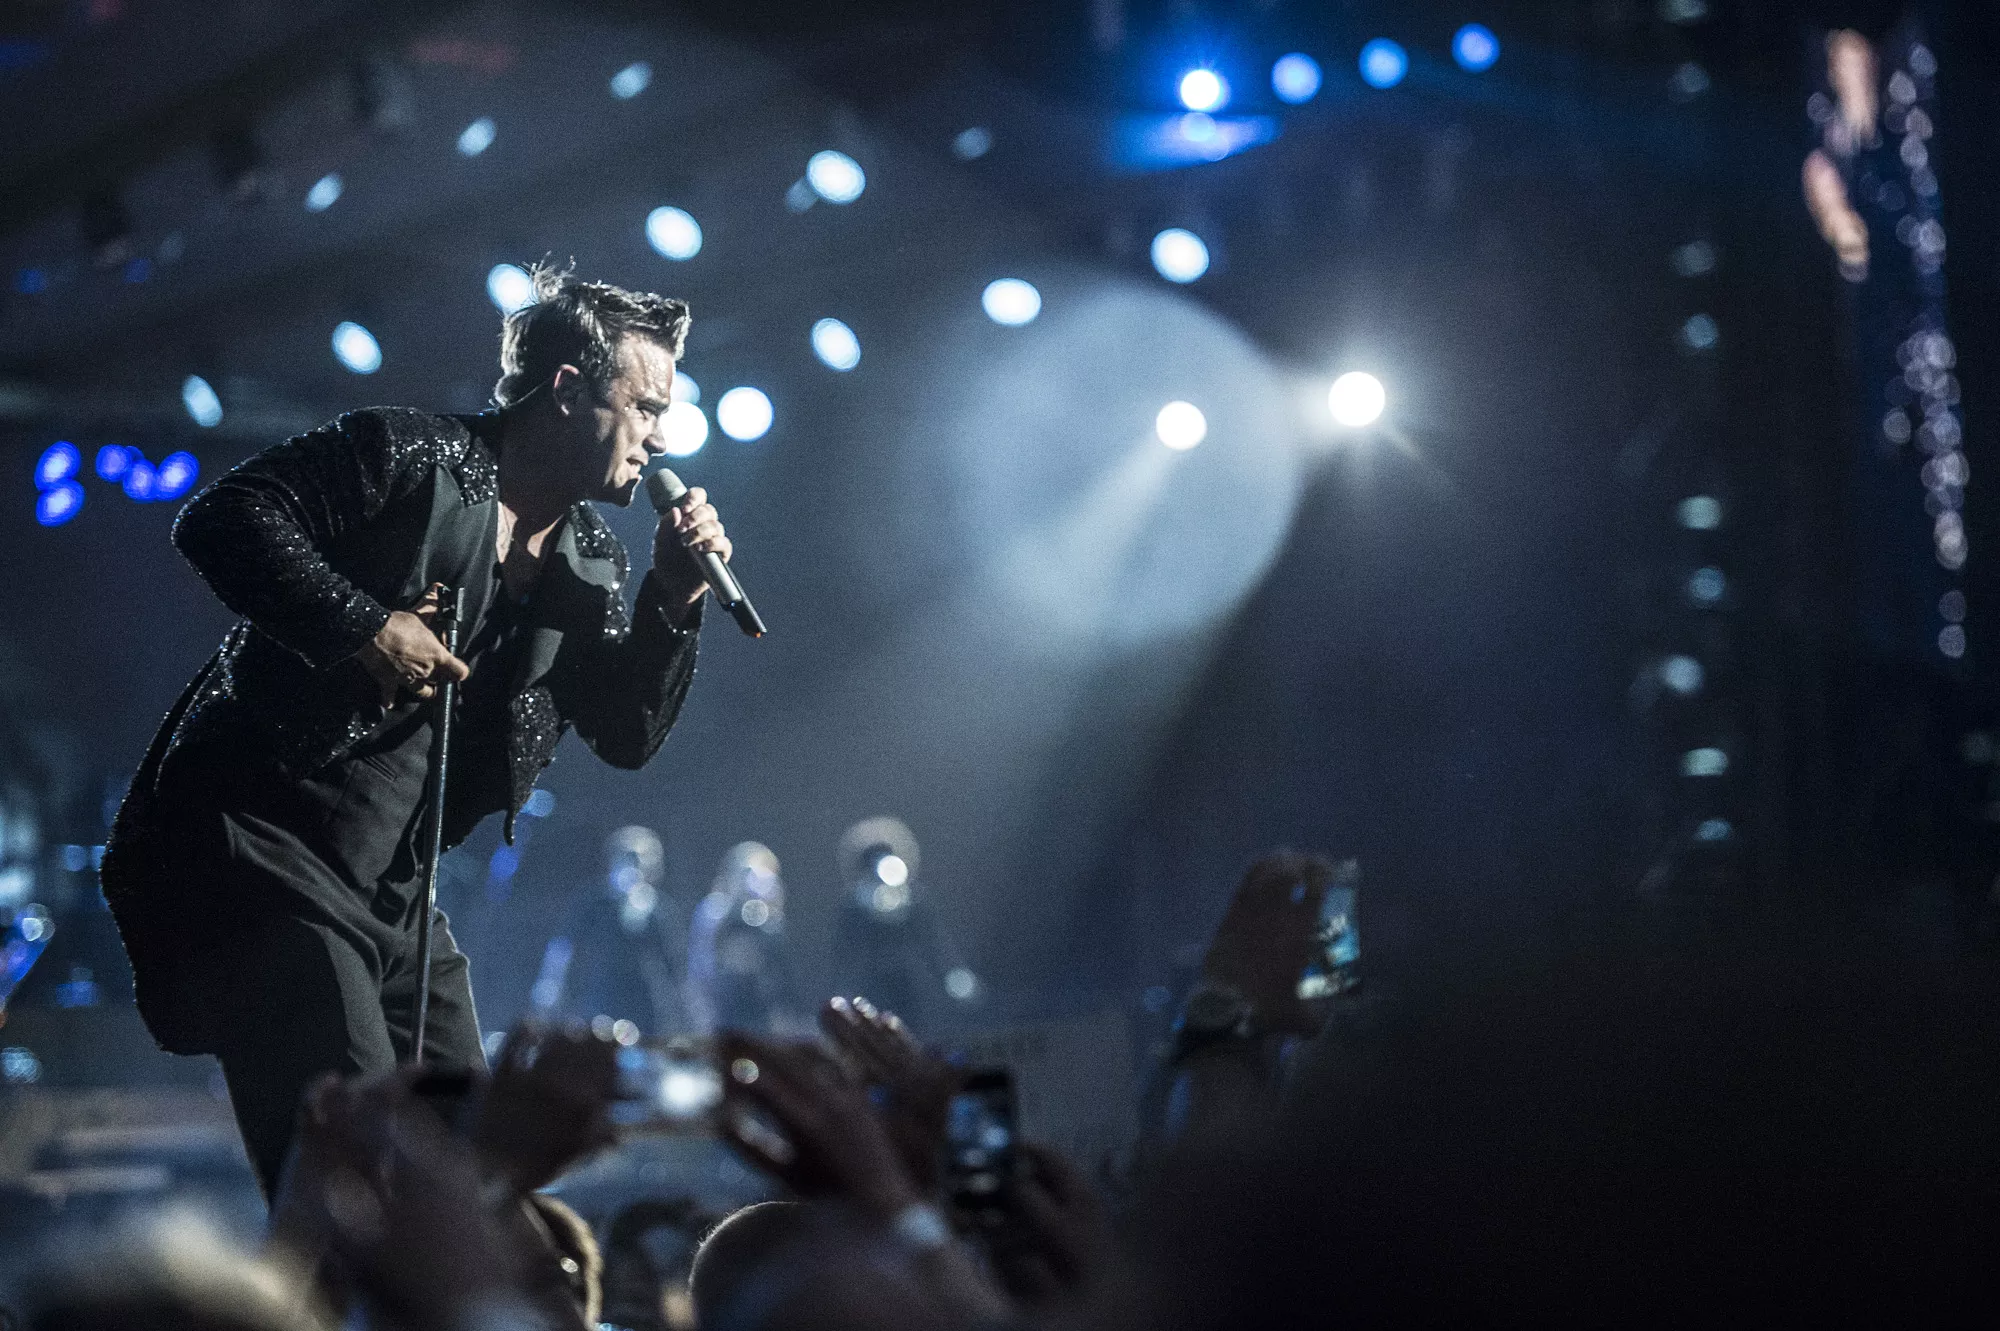 Ifølge Viborg Folkeblad nævner arrangørerne blandt andet Robbie Williams som en artist, der vil passe godt til festivalens målgruppe